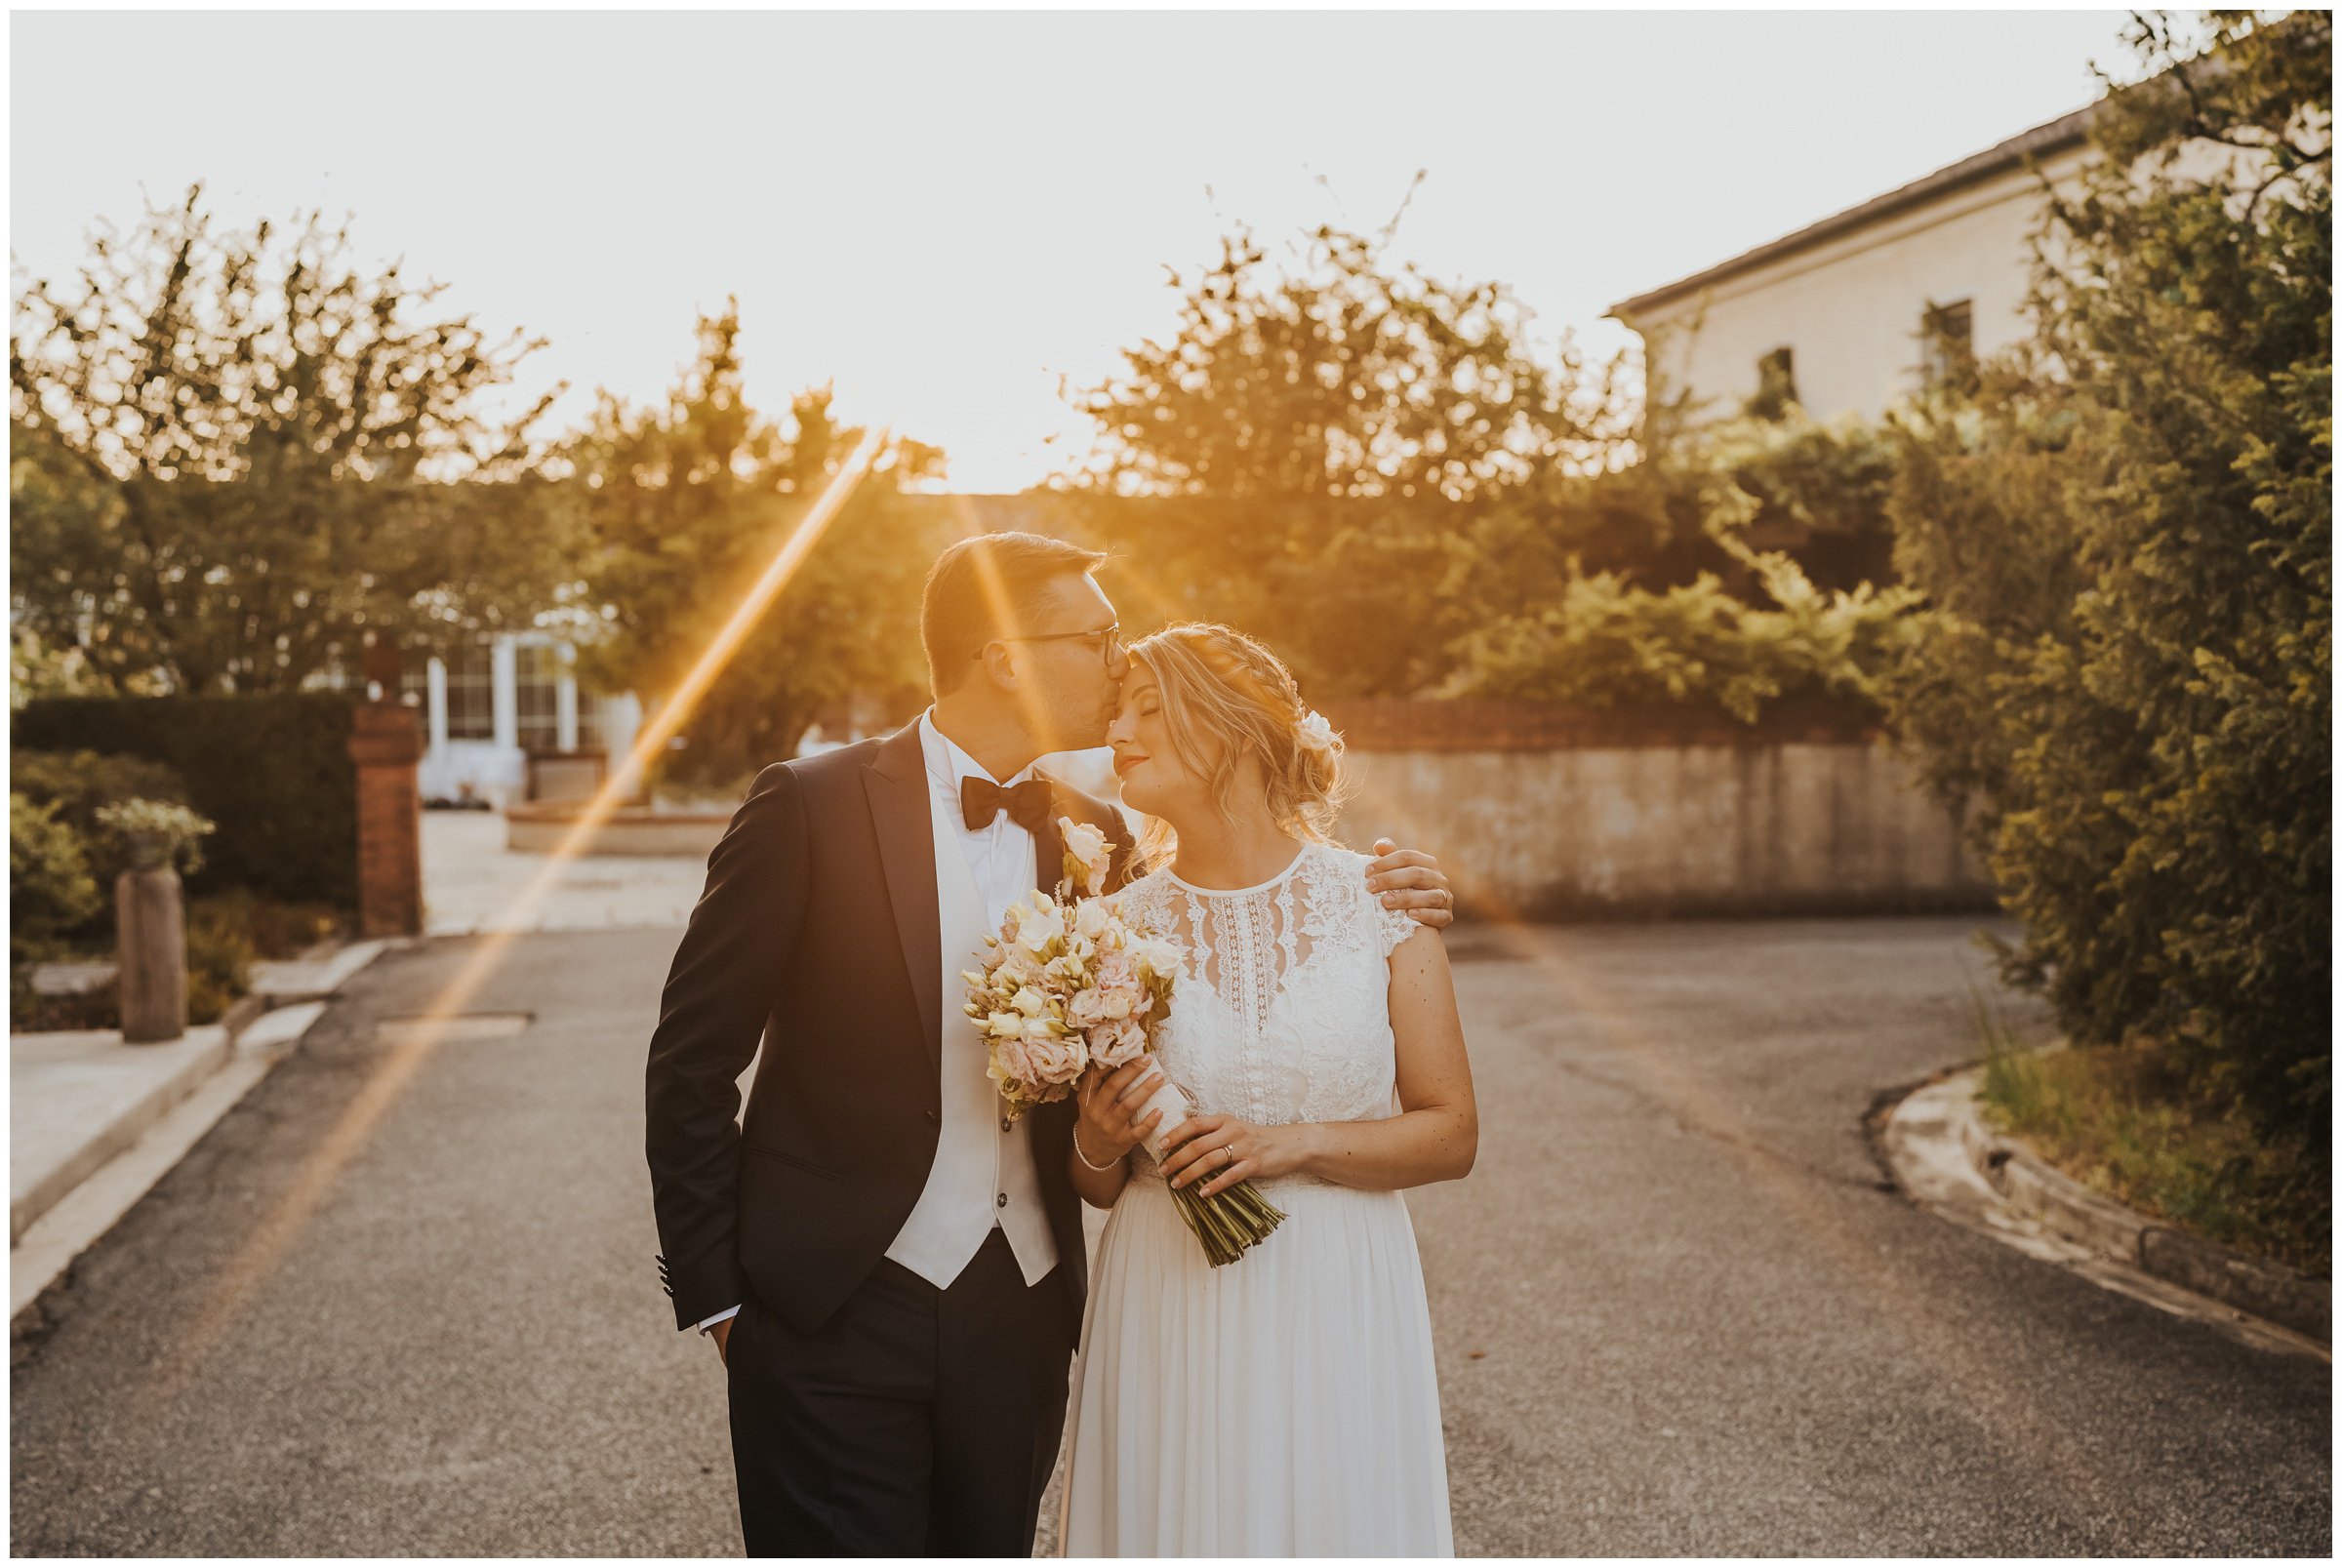 Matrimonio-villa-foscarini-cornaro-fotografo-matrimonio-treviso-fotografo-matrimonio-venezia-51.jpg